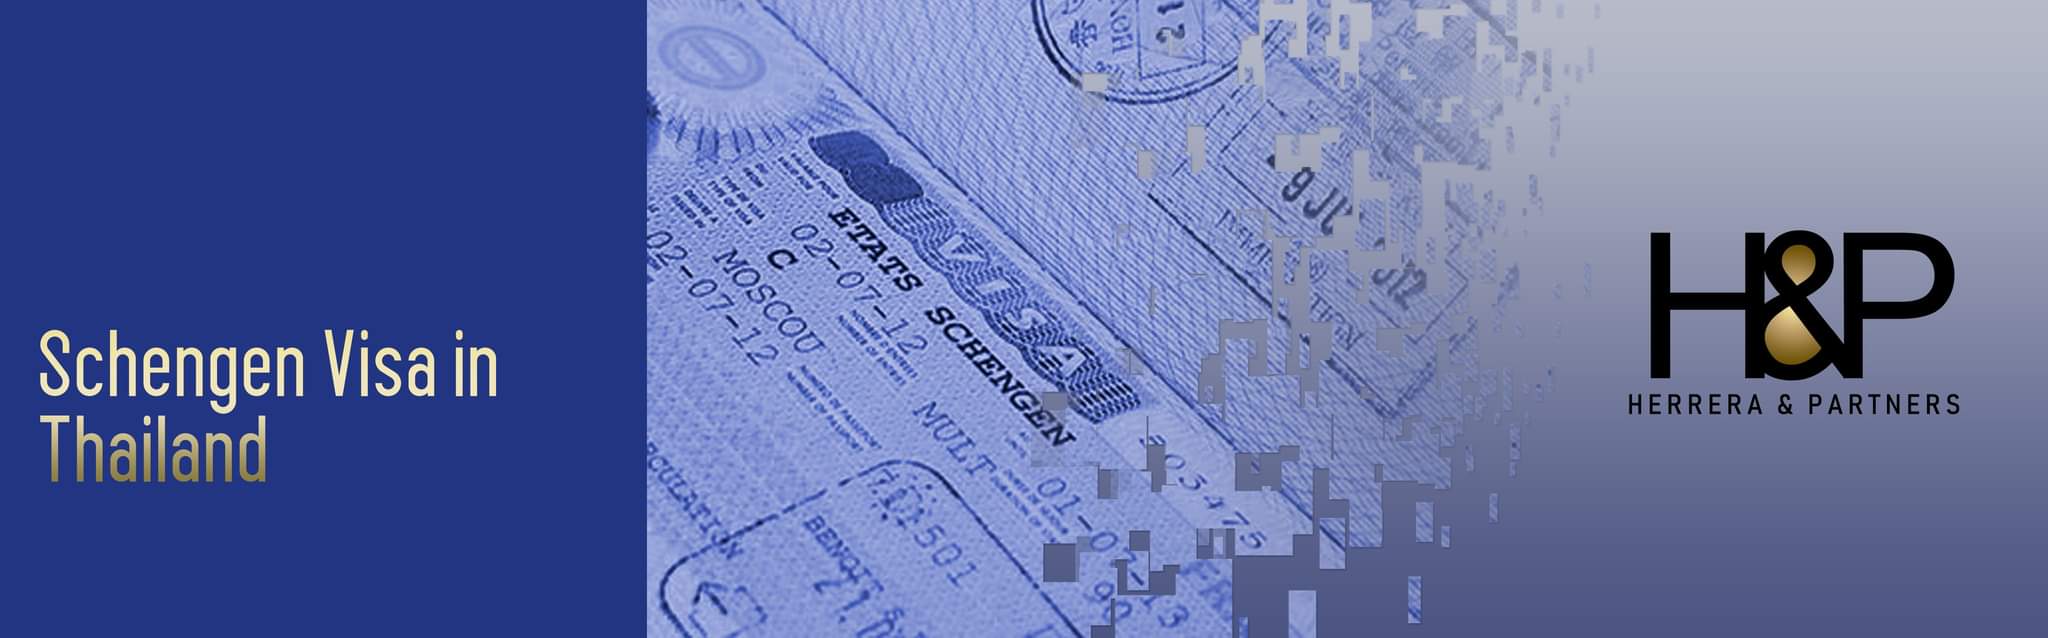 Apply for Schengen Visa in Thailand HP Schengen visa applications to travel to Europe